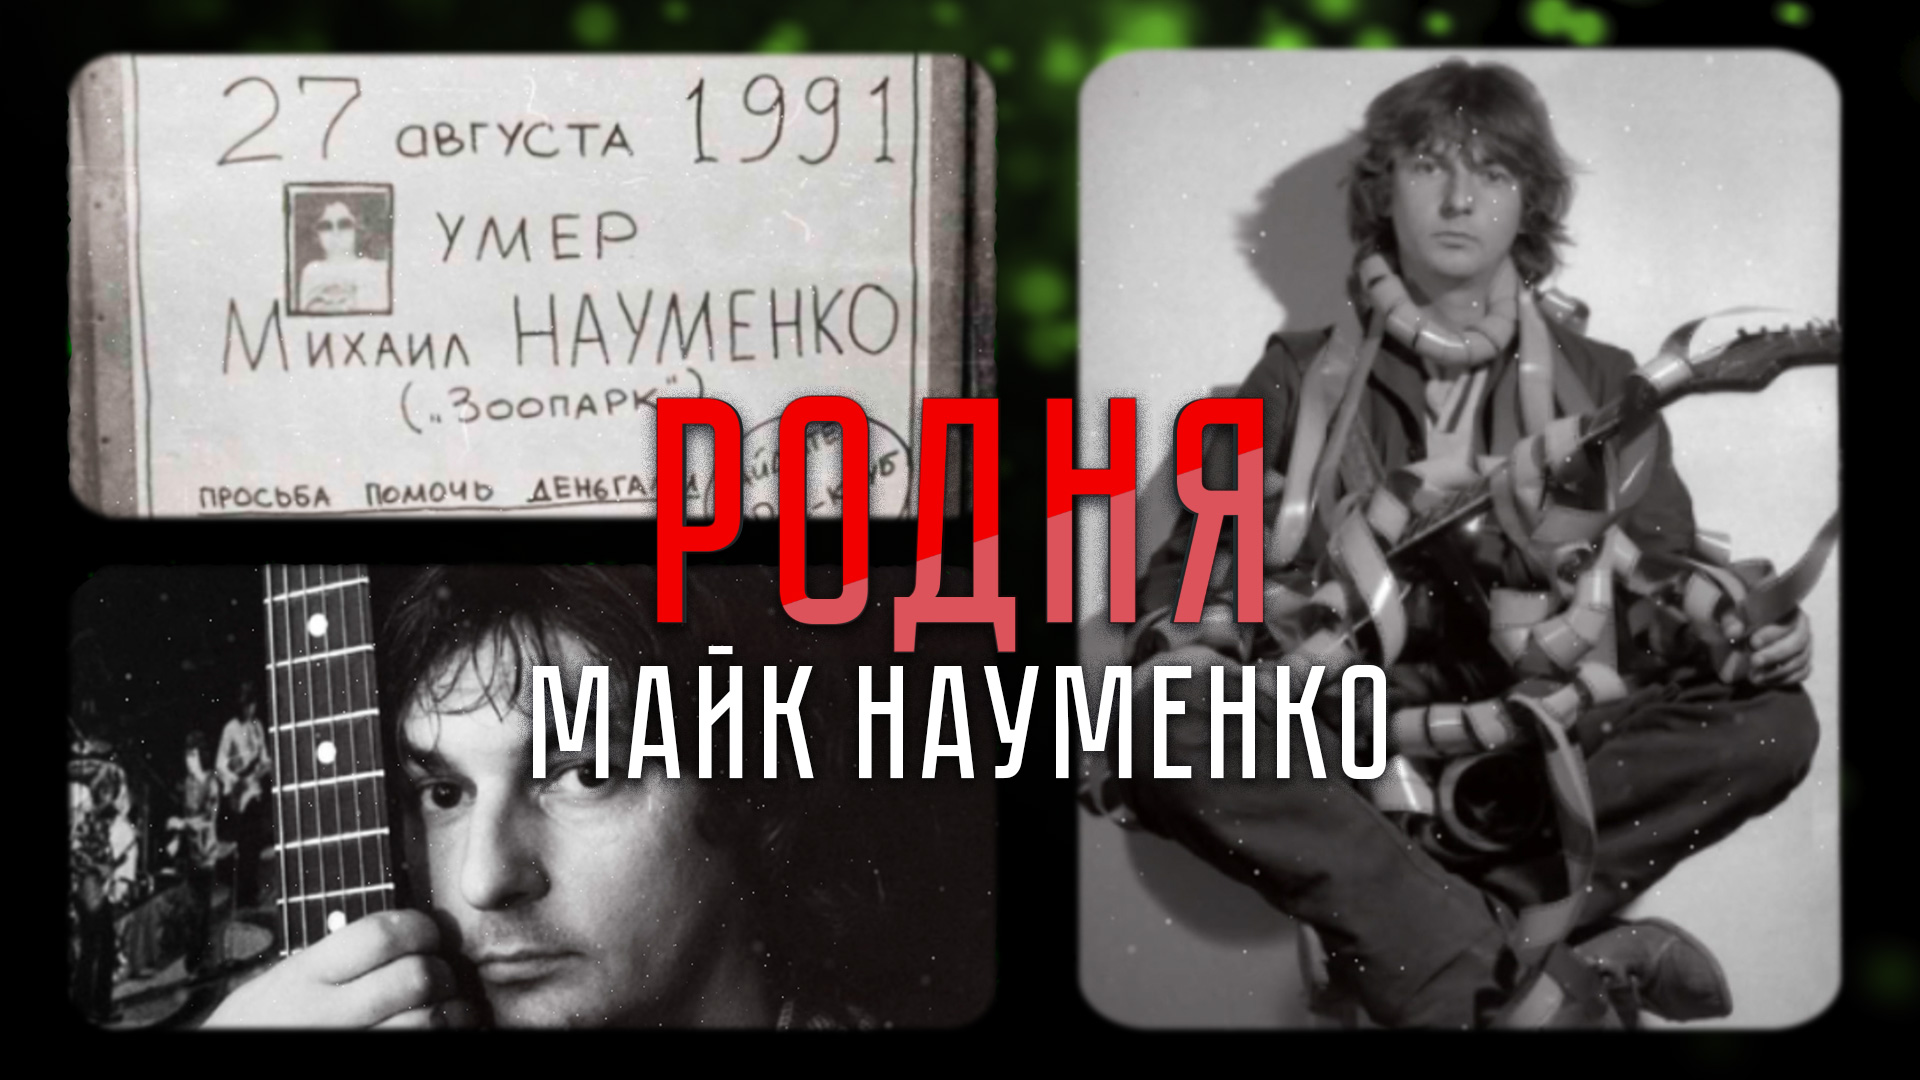 Советская рок-звезда 80-х, погасшая вместе с Союзом | «Родня»